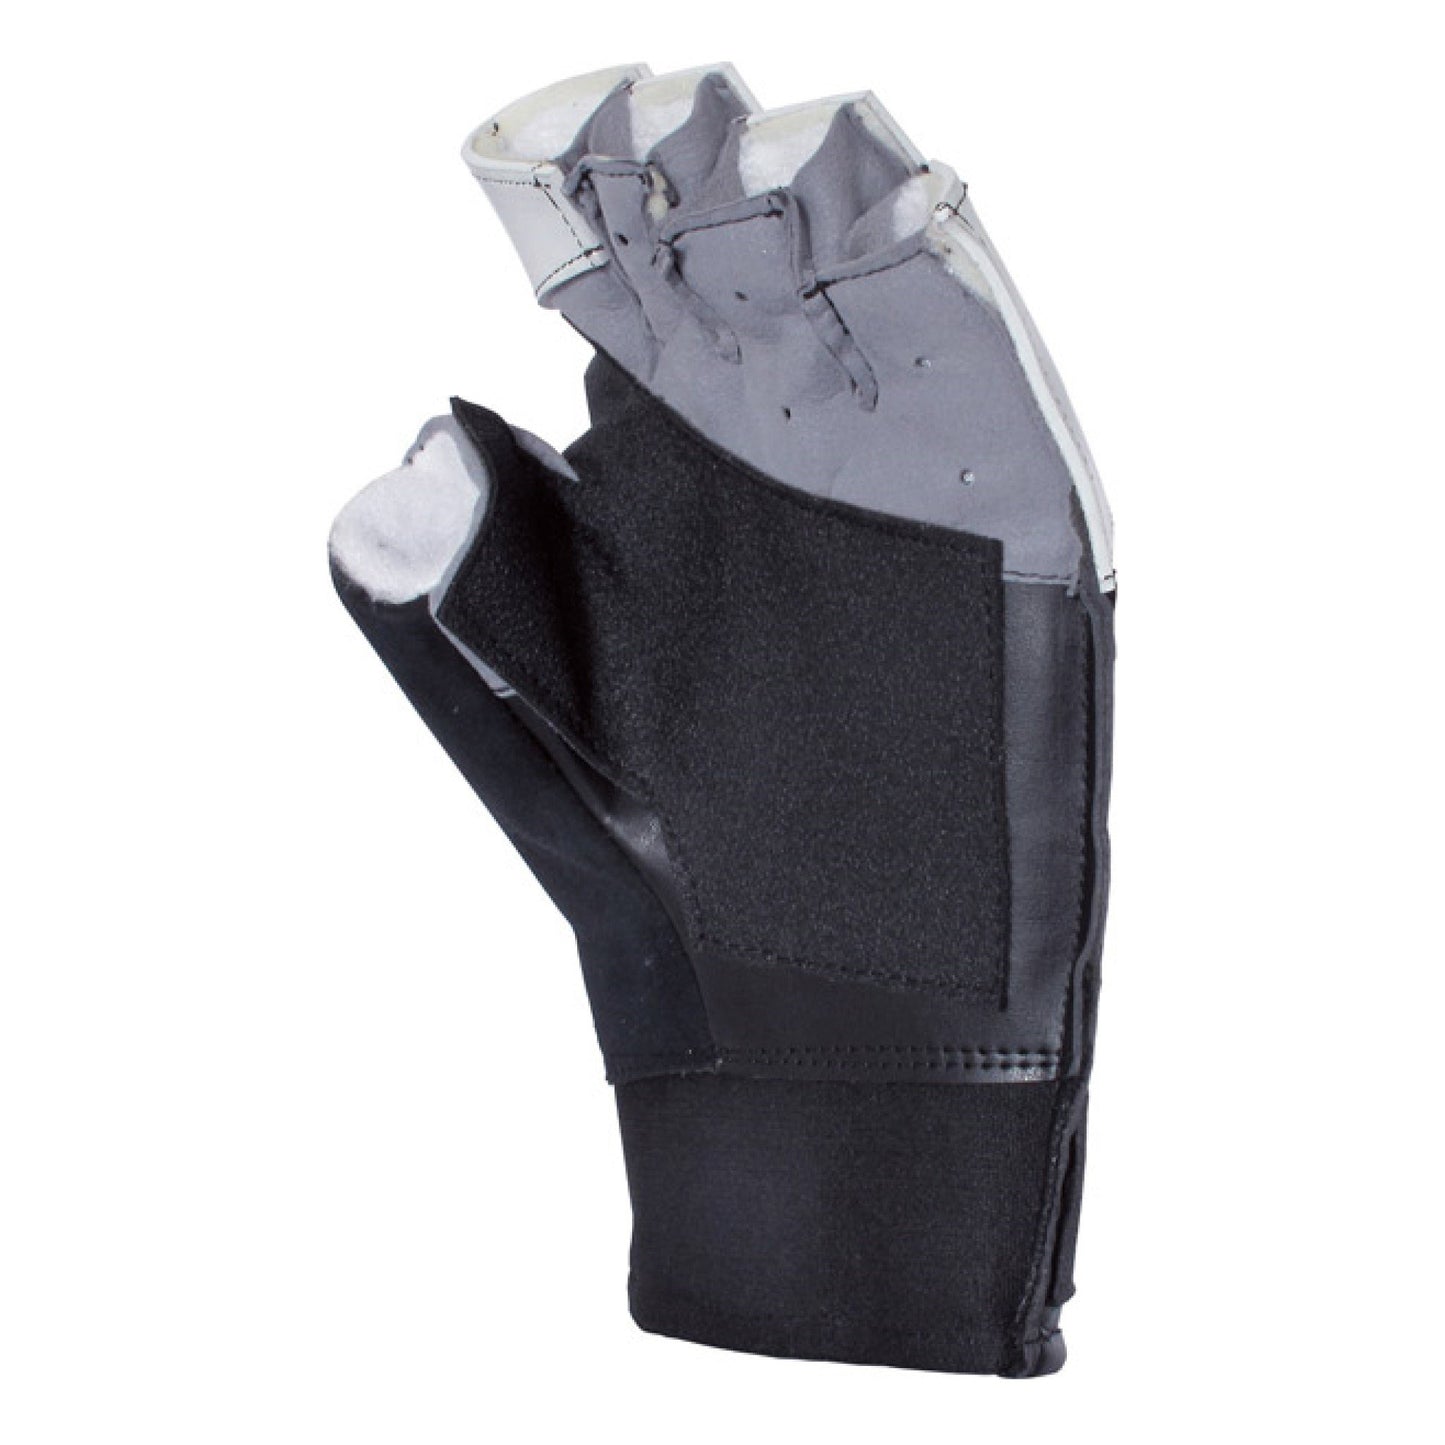 Gehmann 470 Glove